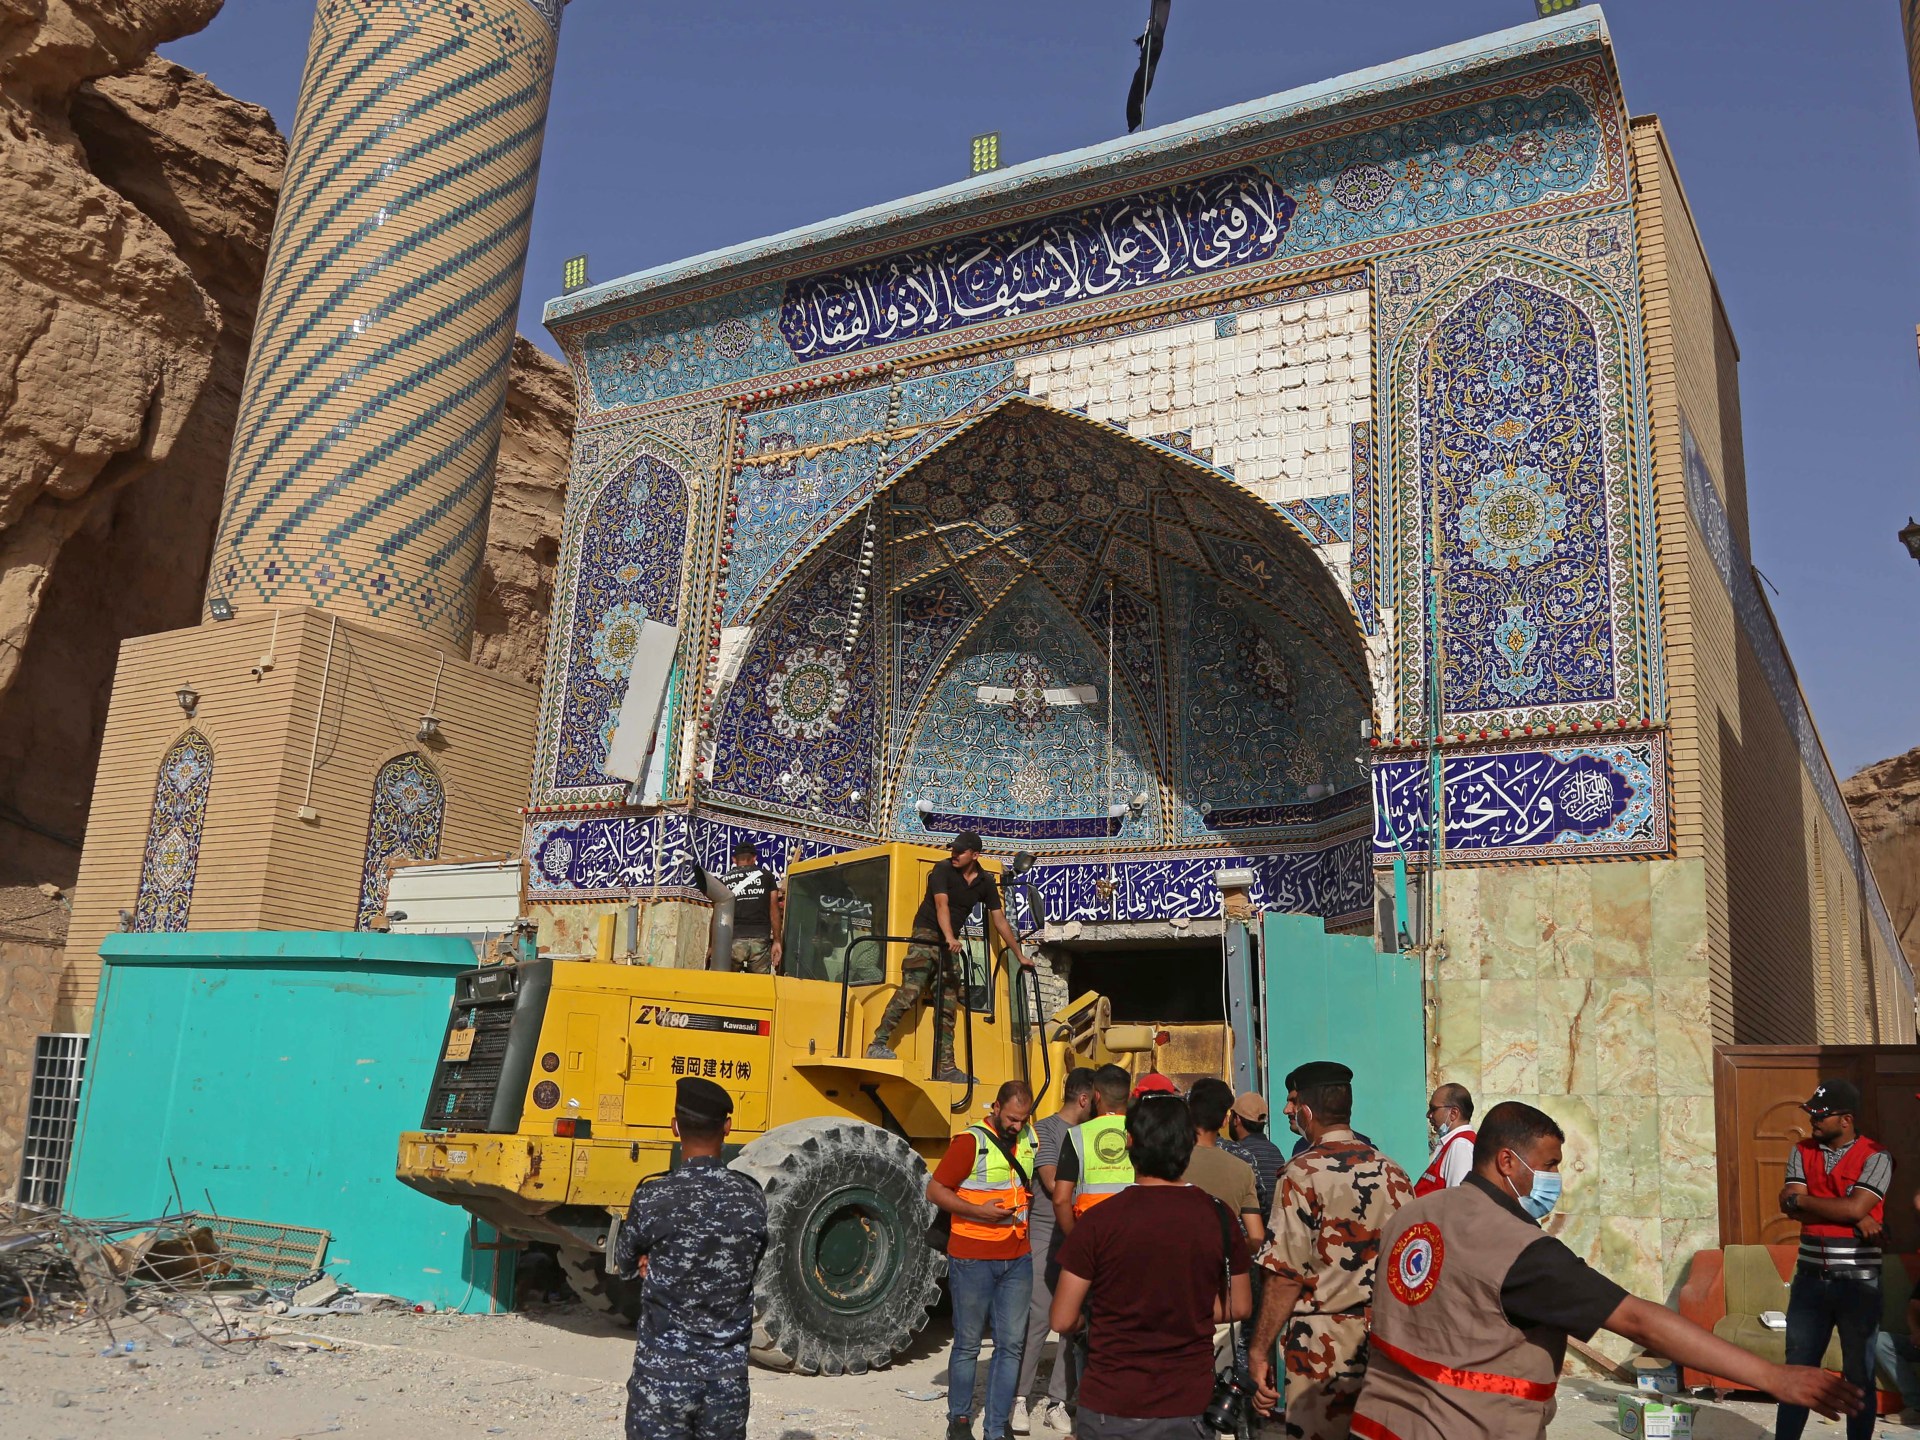 محاولة إنقاذ محمومة في معبد في العراق تعرض لانهيار أرضي  اخبار